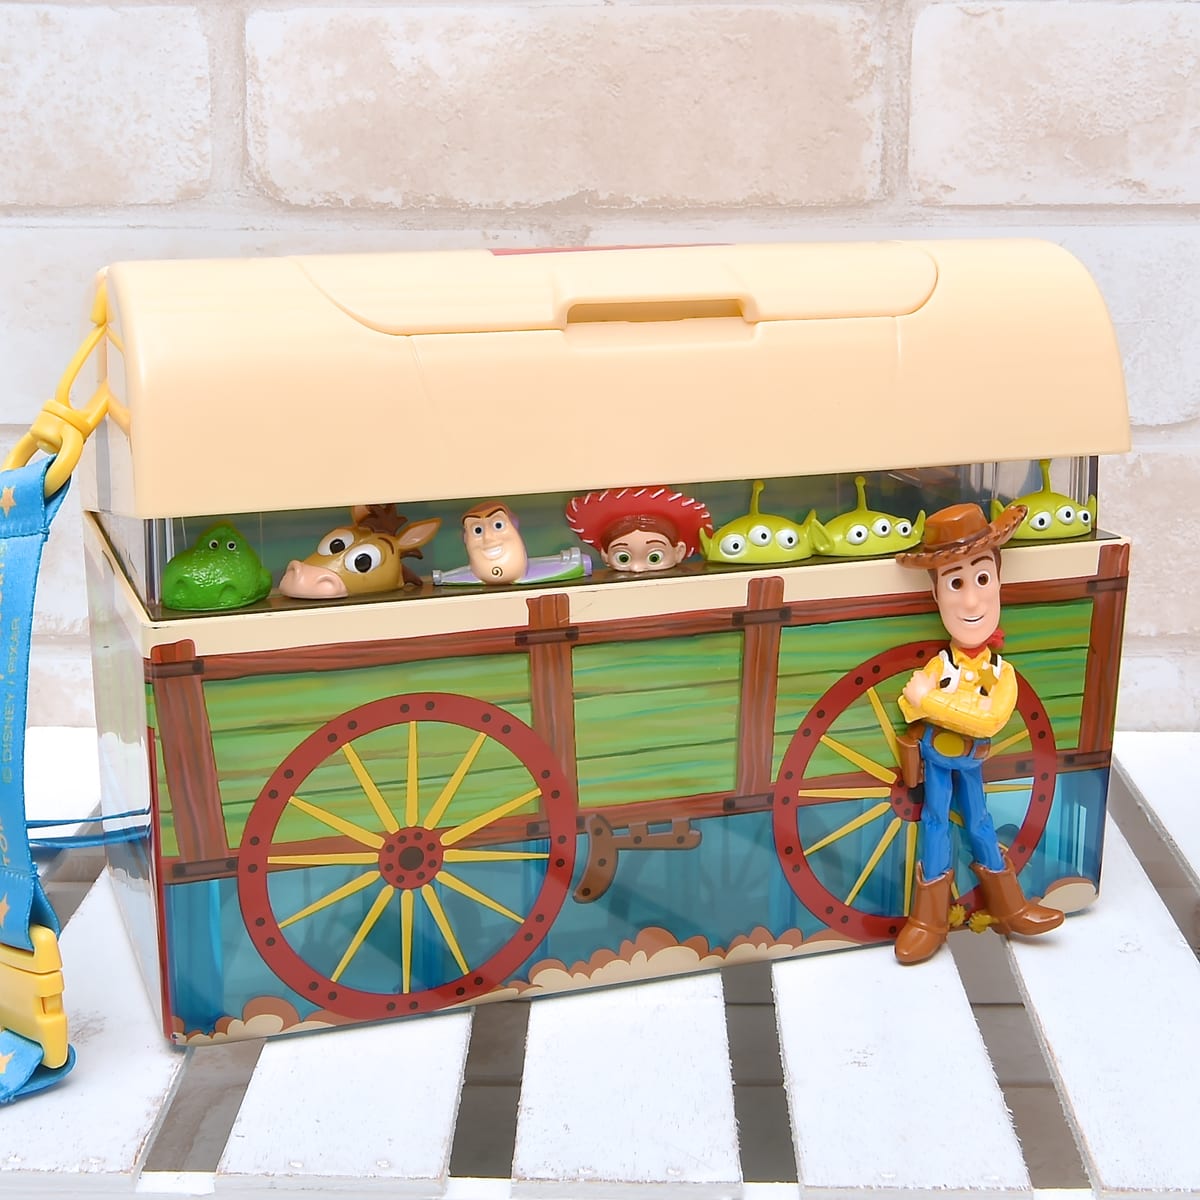 アンディのおもちゃ箱モチーフ！東京ディズニーシー『トイ・ストーリー』デザインポップコーンバケット | ニコニコニュース